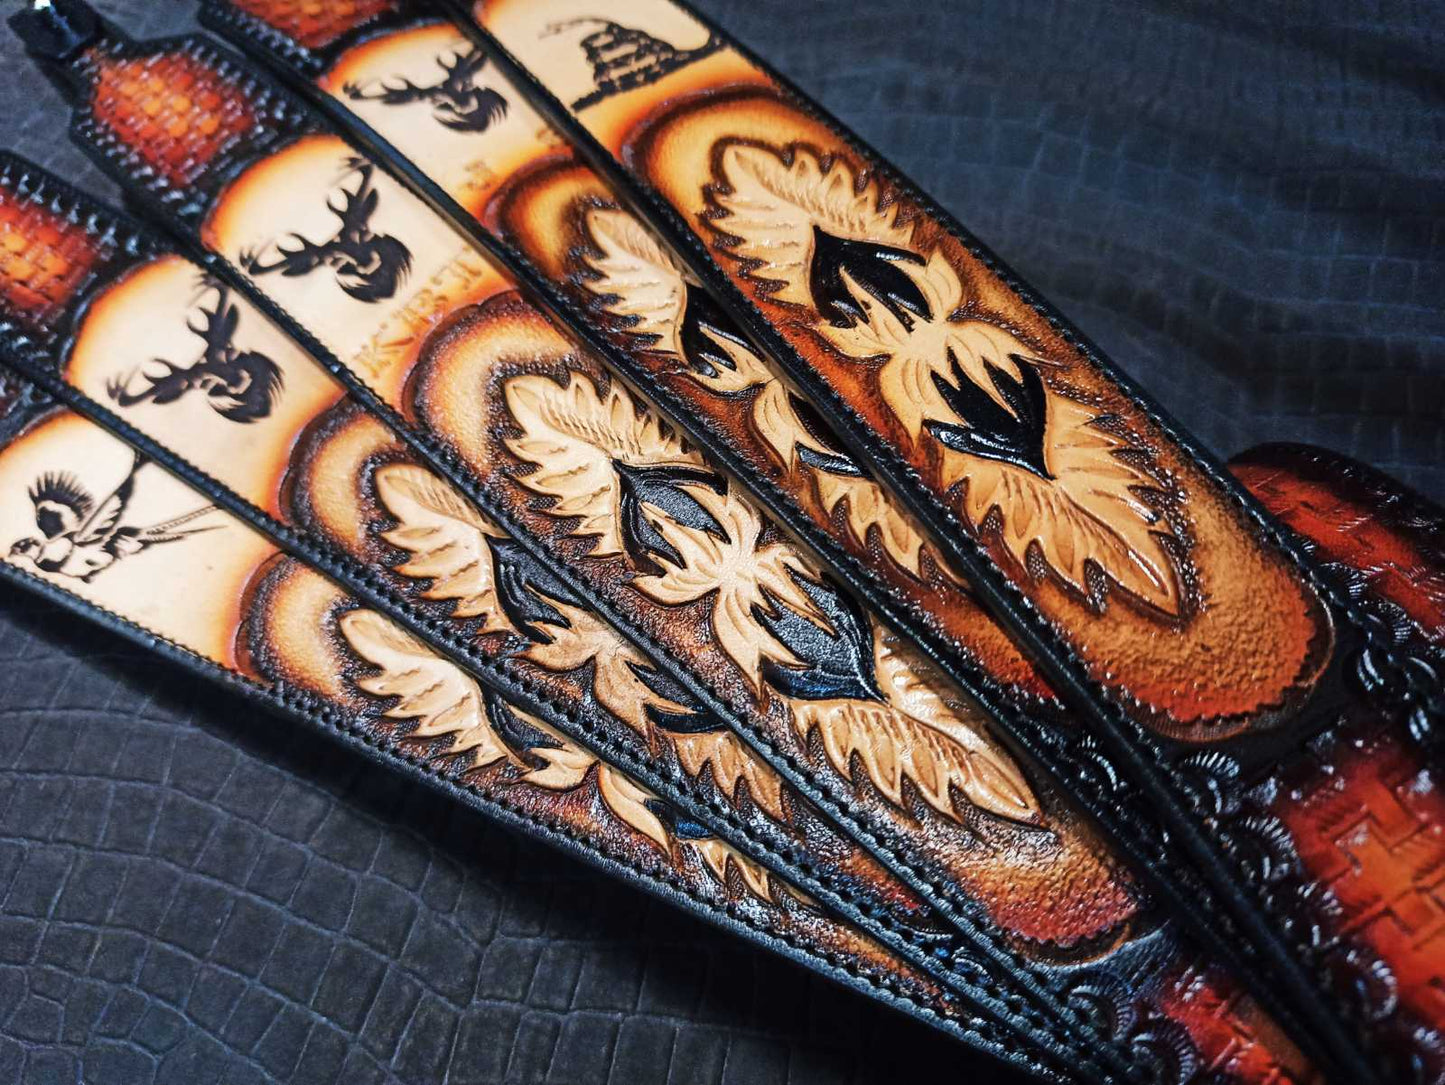 Custom Leather Sling - Custom Padded Sling - Personalized Leather Strap - Personalized Fathers Day Gift - Groomsman Gift - Christmas Gift